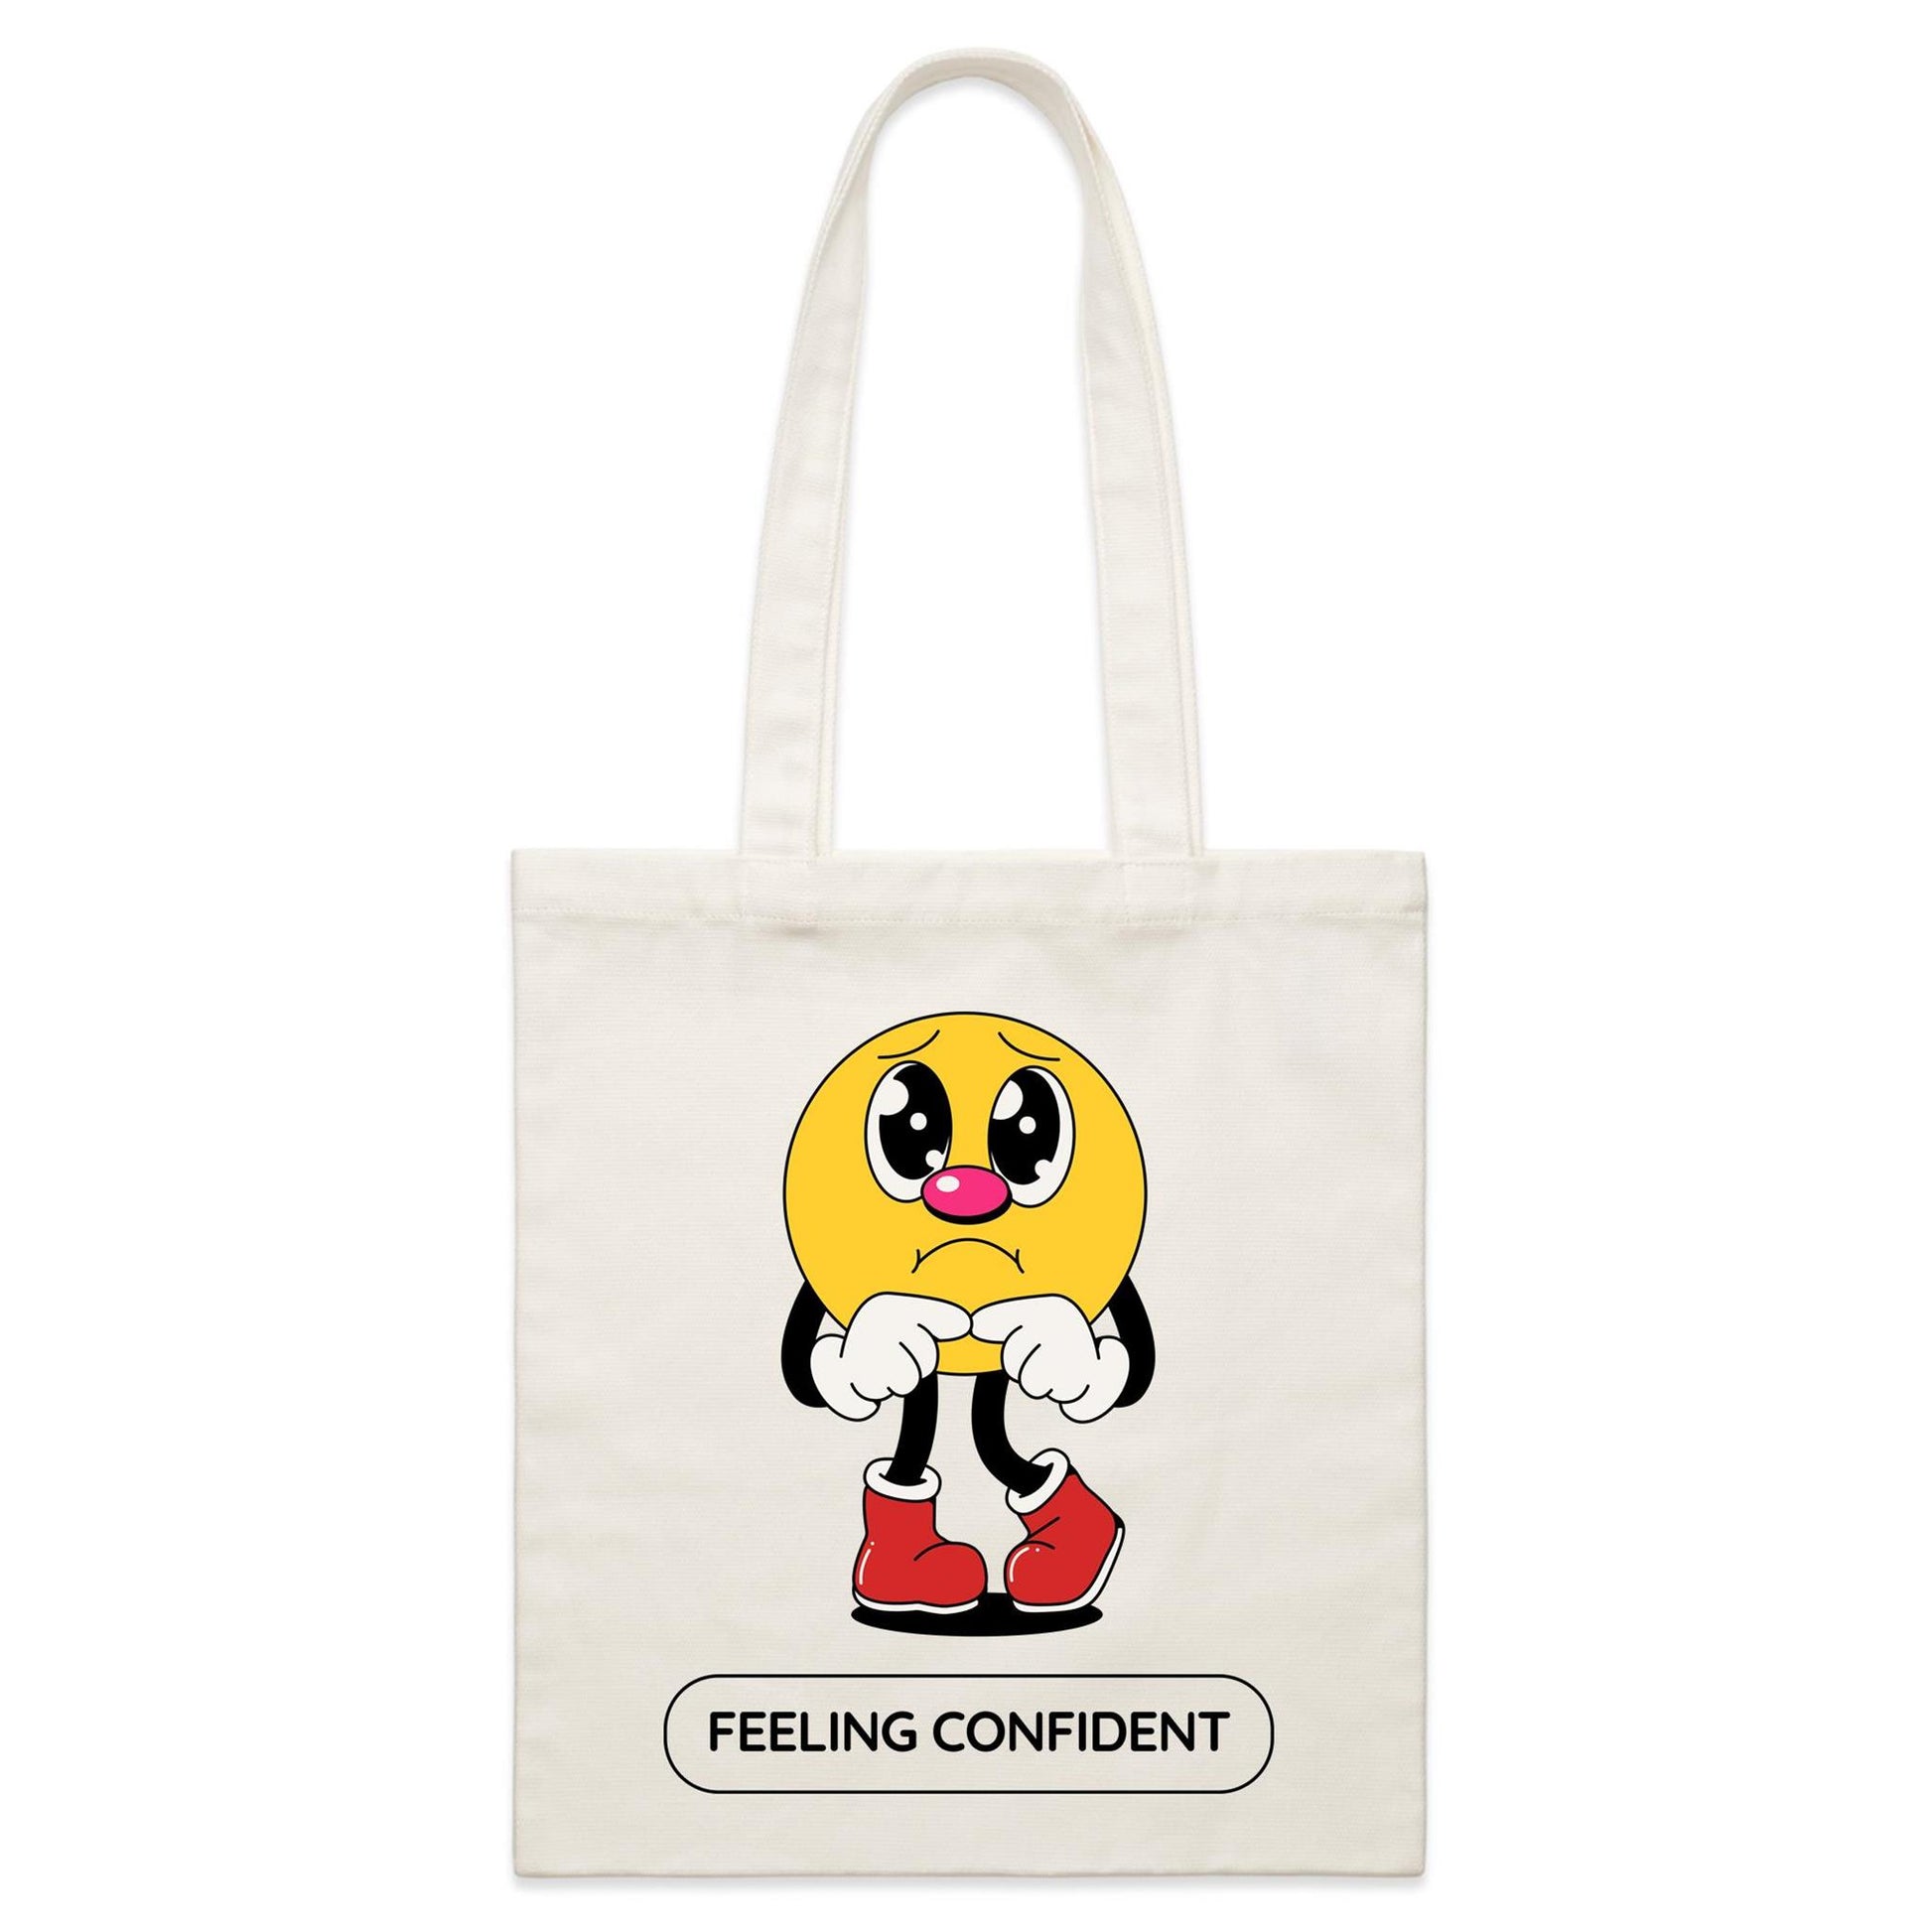 Feeling Confident - Parcel Canvas Tote Bag Default Title Parcel Tote Bag